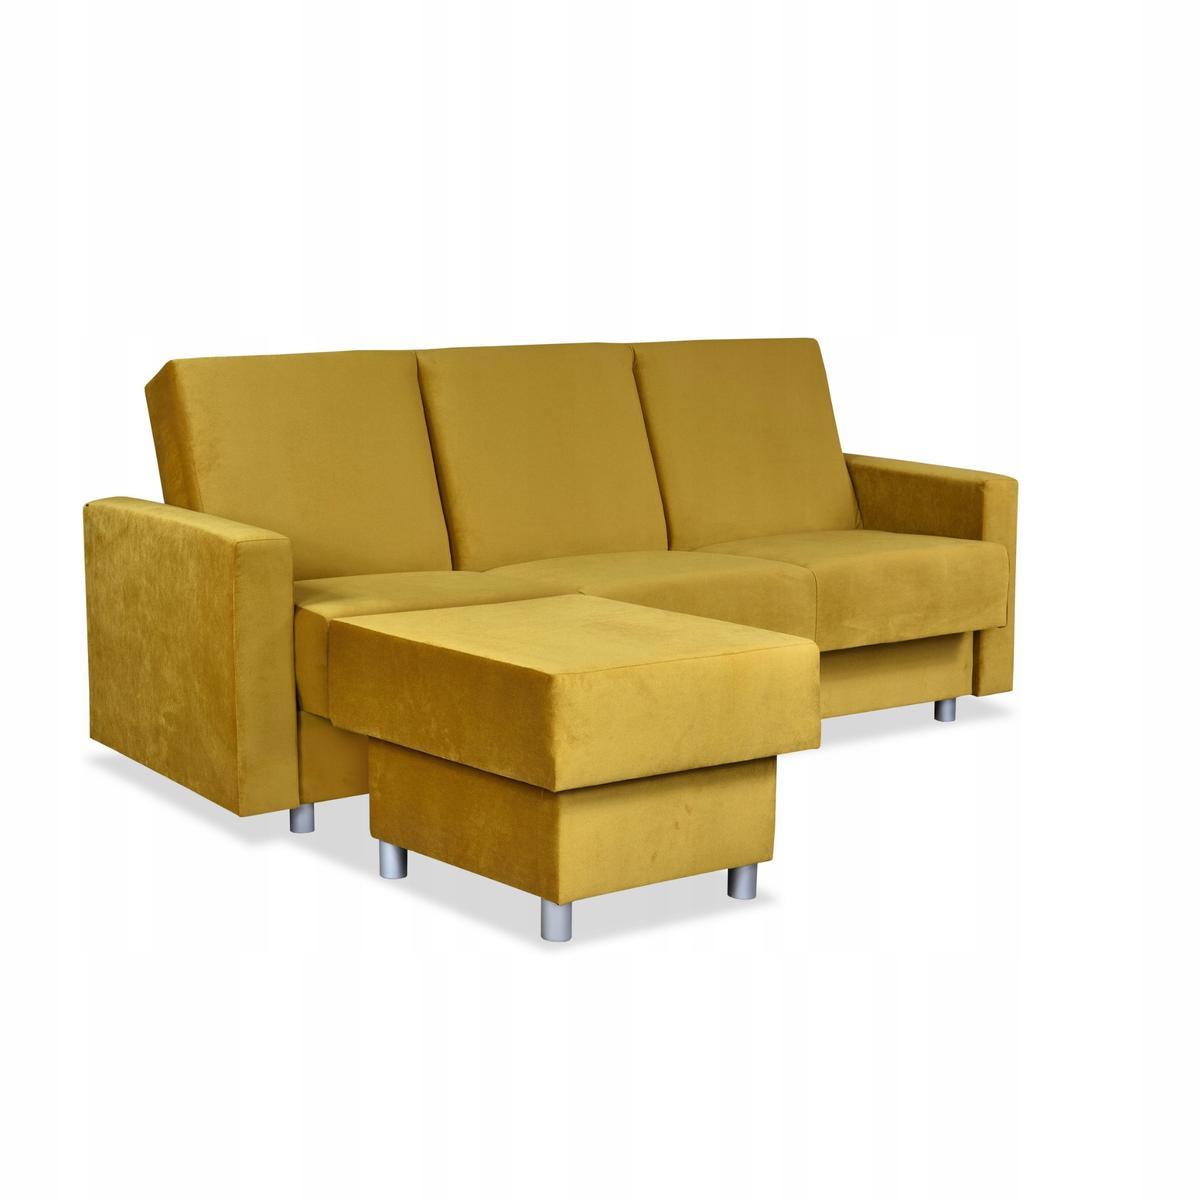 Wersalka Narożnik Alicja z pufą sofa kanapa rozkładana Family Meble żółta nr. 1